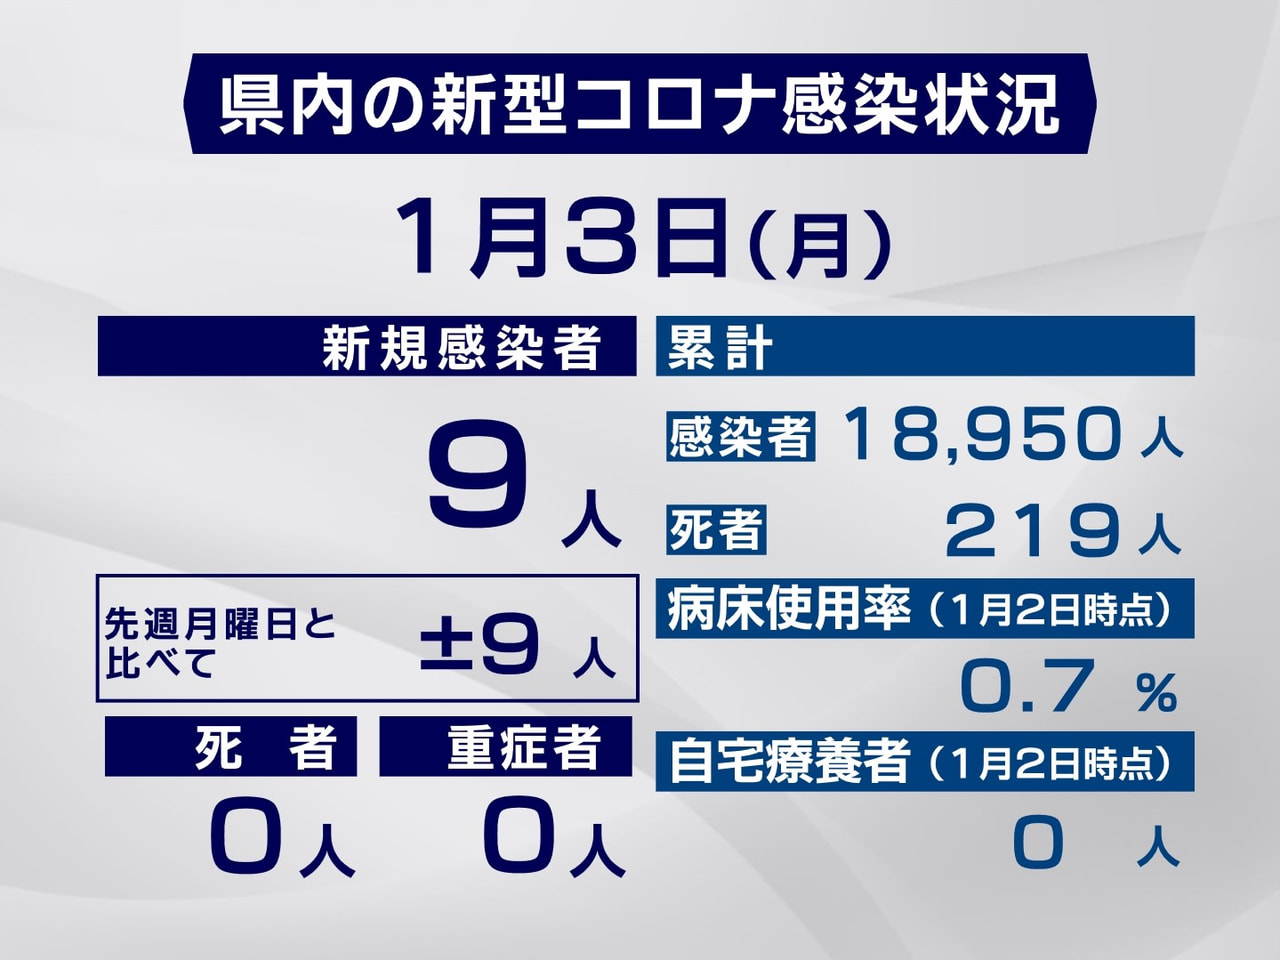 岐阜県は３日、新型コロナウイルスの新たな感染者が９人確認されたと発表しました。 ...